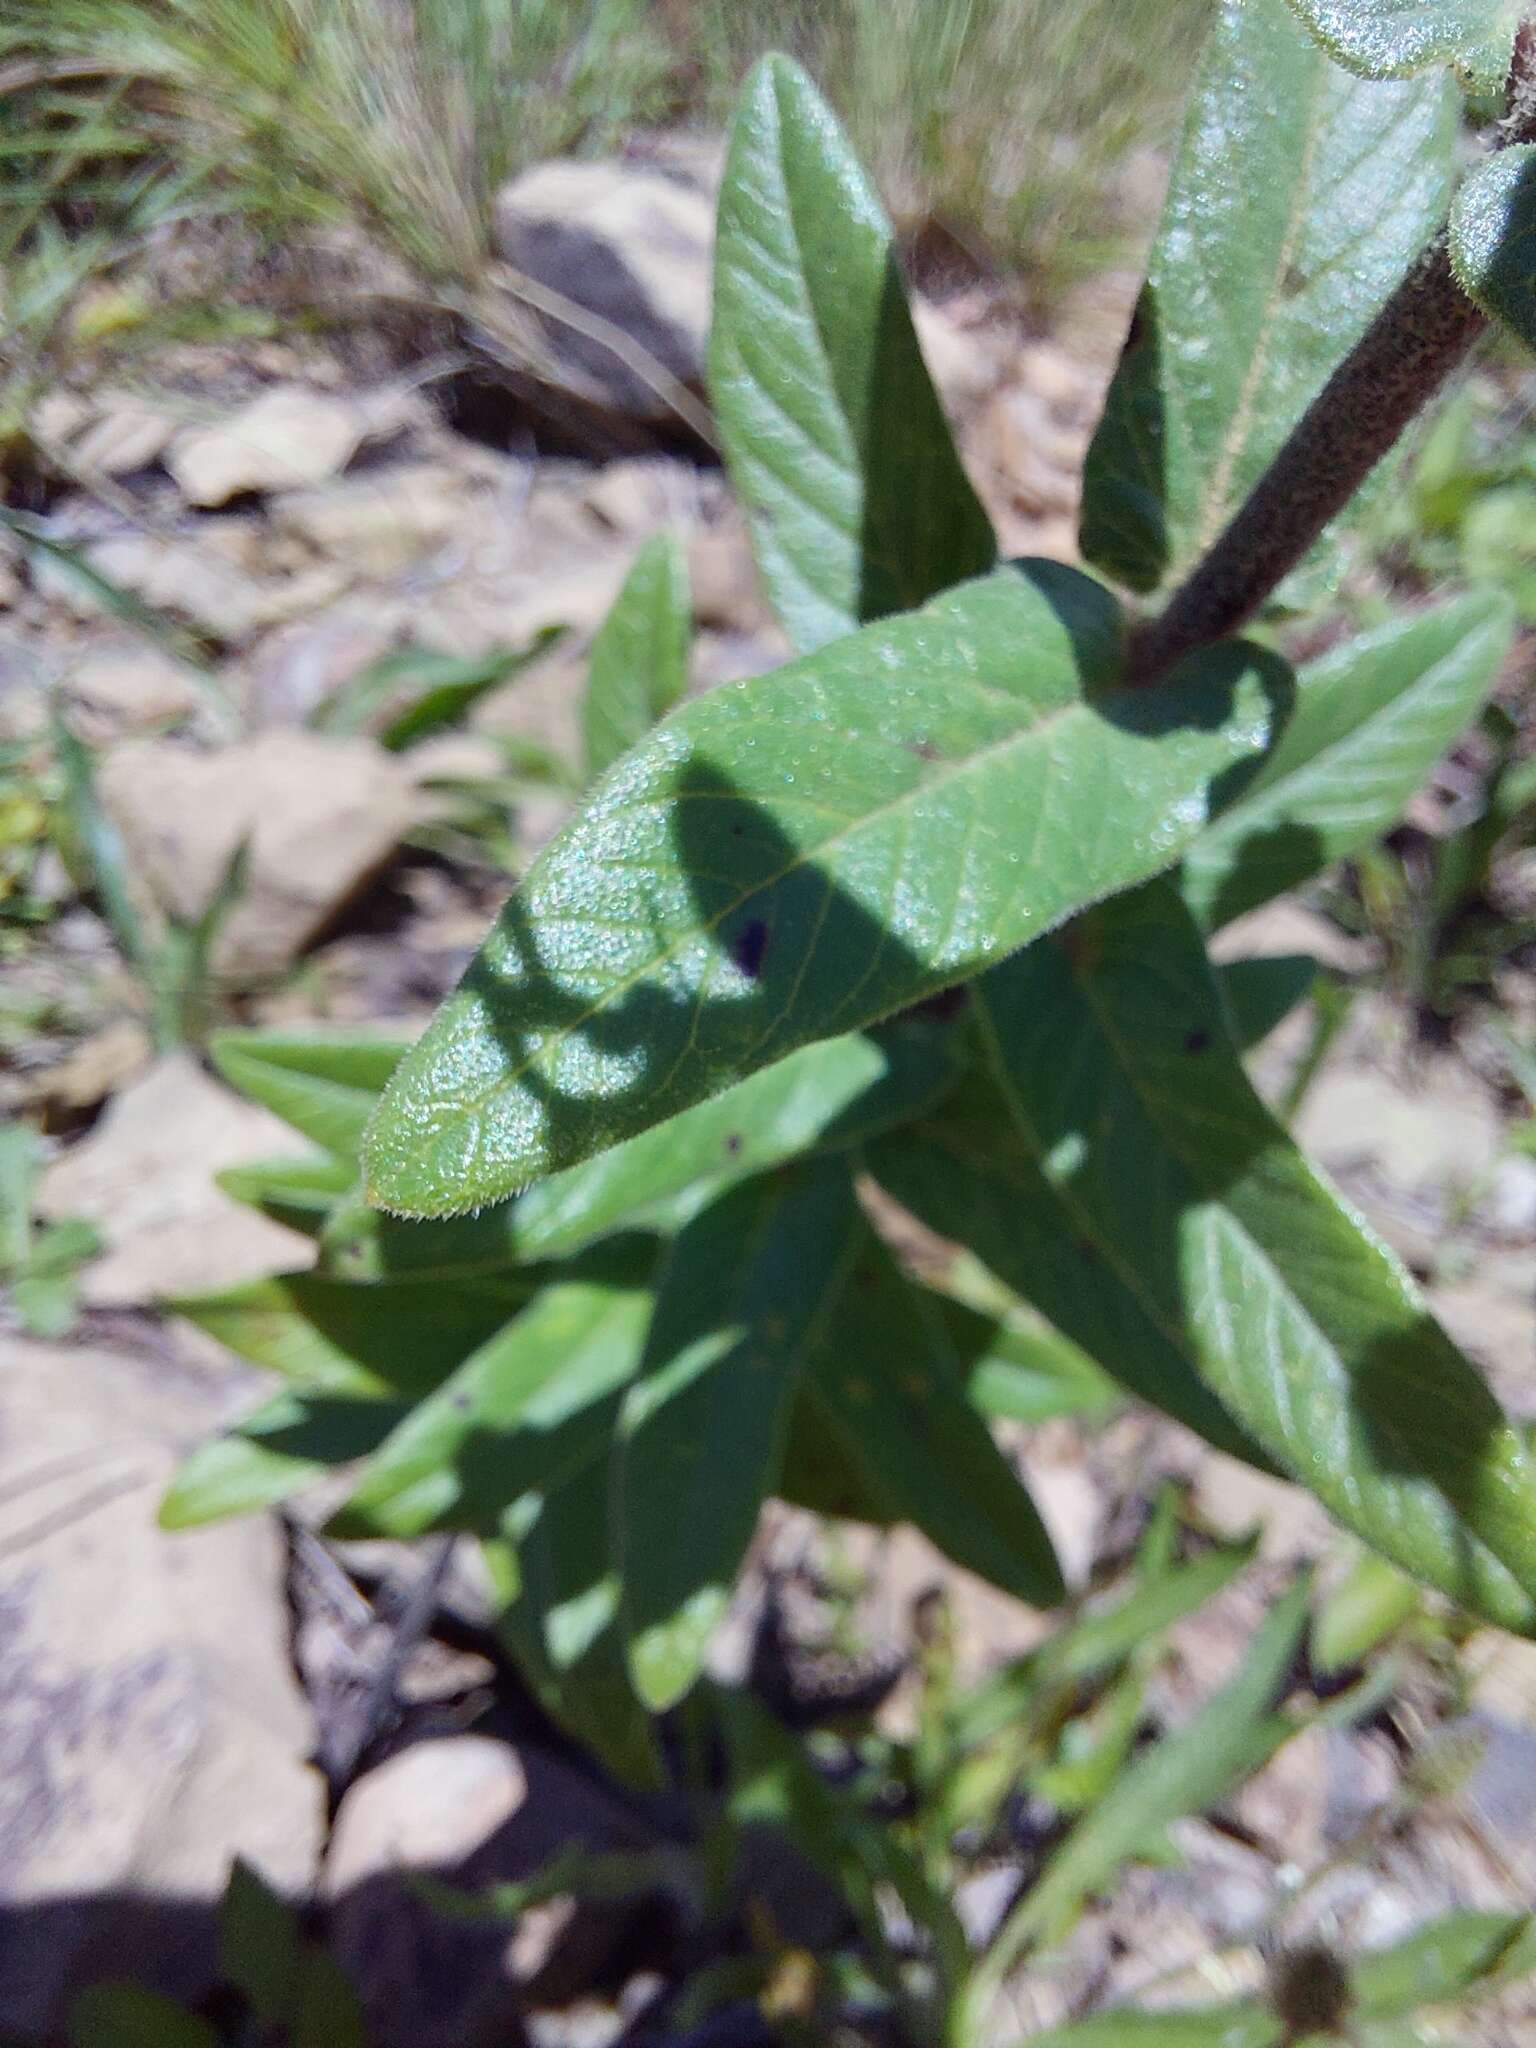 Image of Schizoglossum atropurpureum subsp. atropurpureum